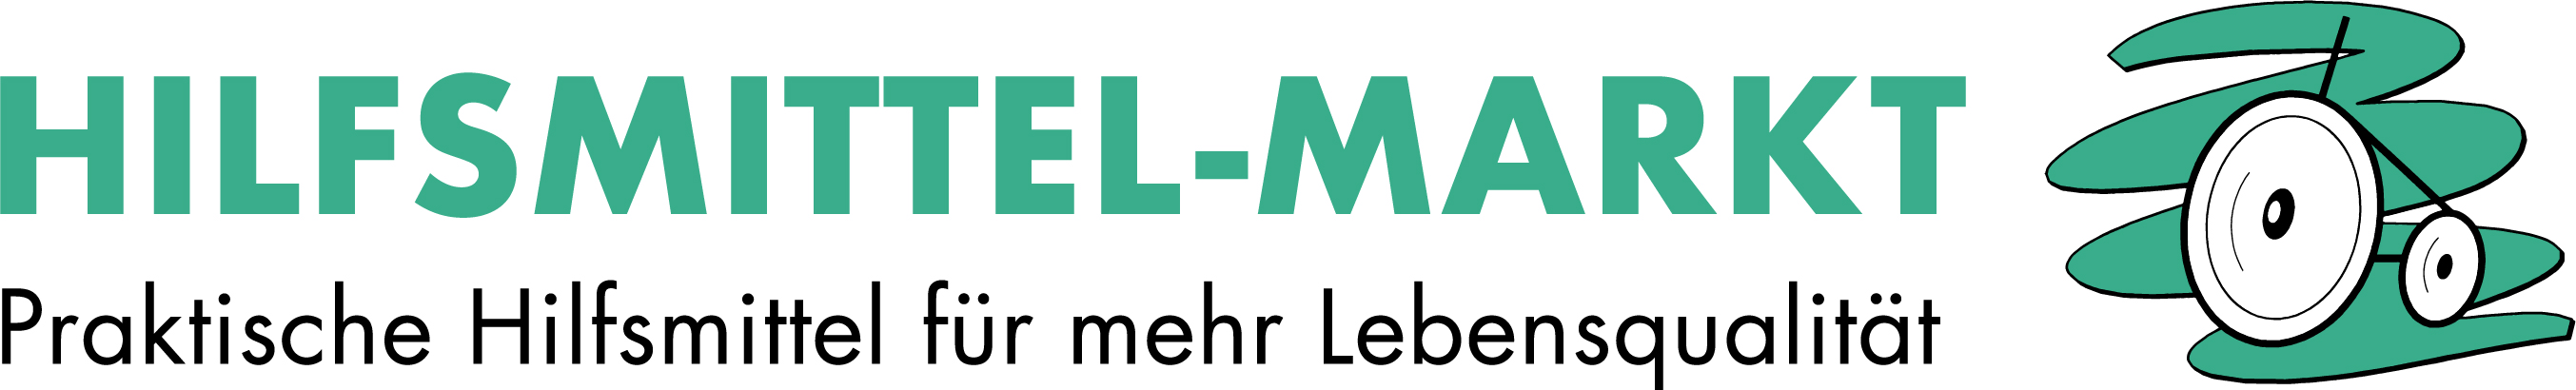 Hilfsmittelmarkt Logo 2021 cmyk